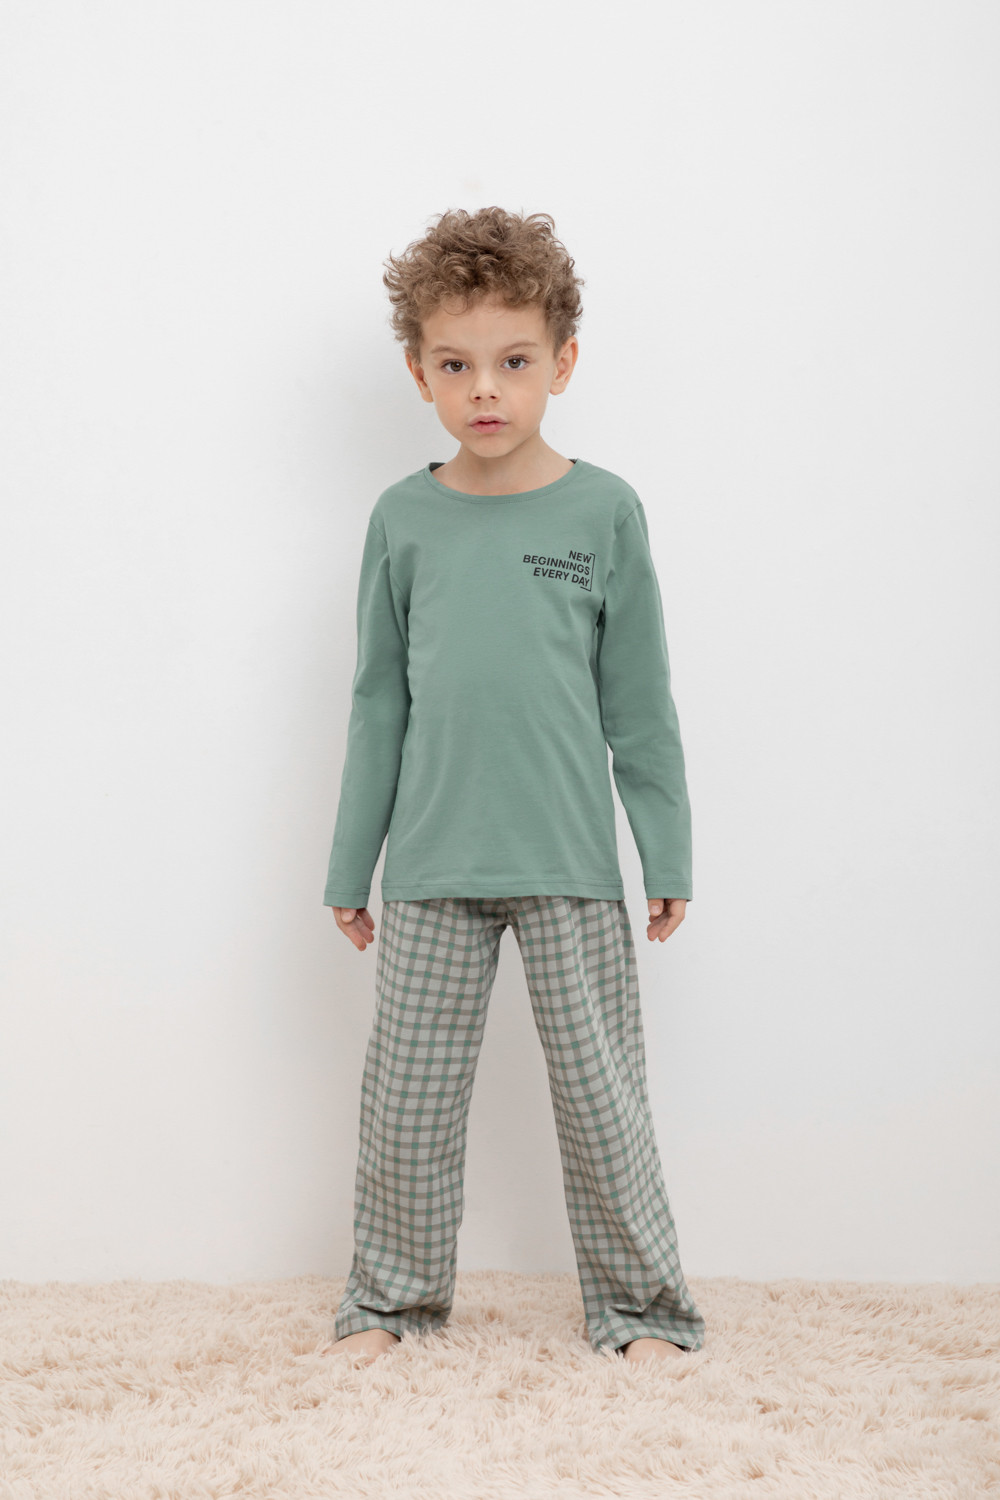 Пижама детская CROCKID М 1303-1, М 3702, весенний зеленый, бежевая клетка, 146 футболка для мальчиков бежевая с рисунком и текстом